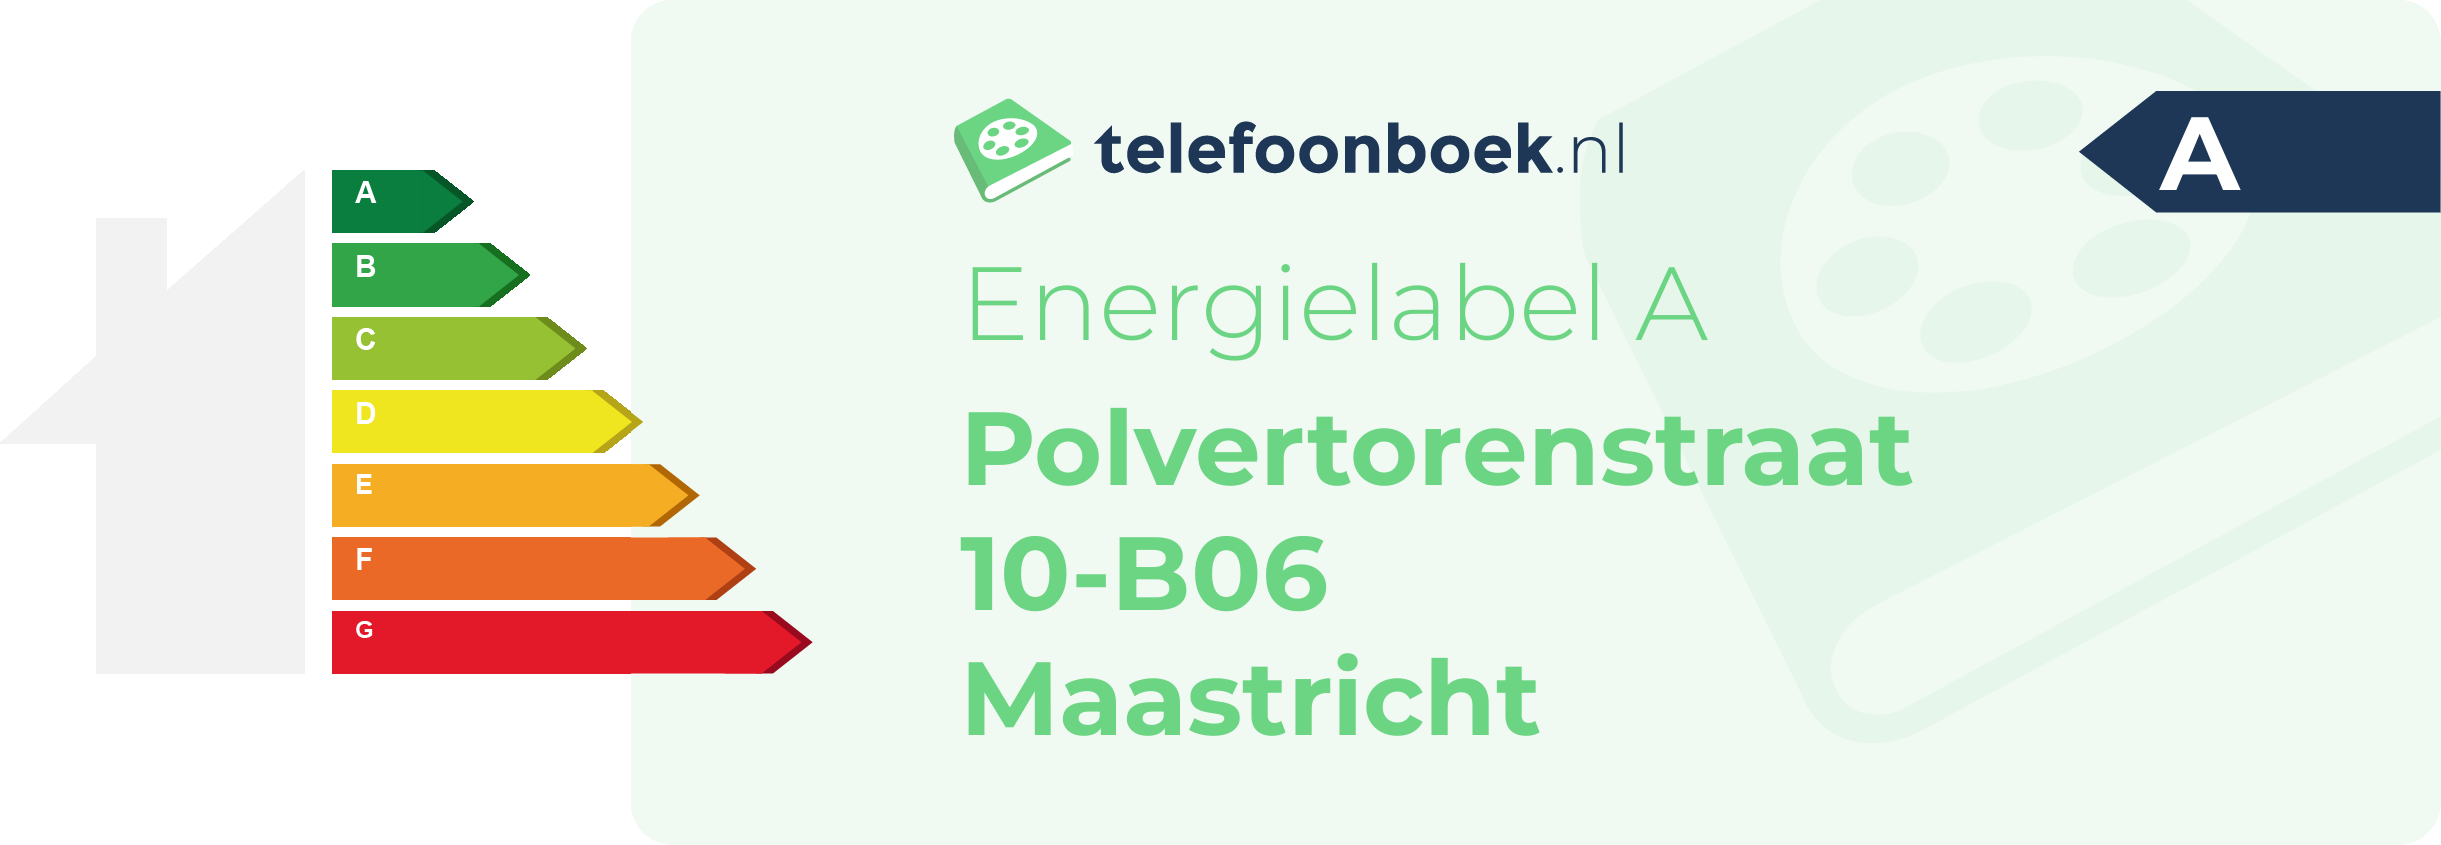 Energielabel Polvertorenstraat 10-B06 Maastricht